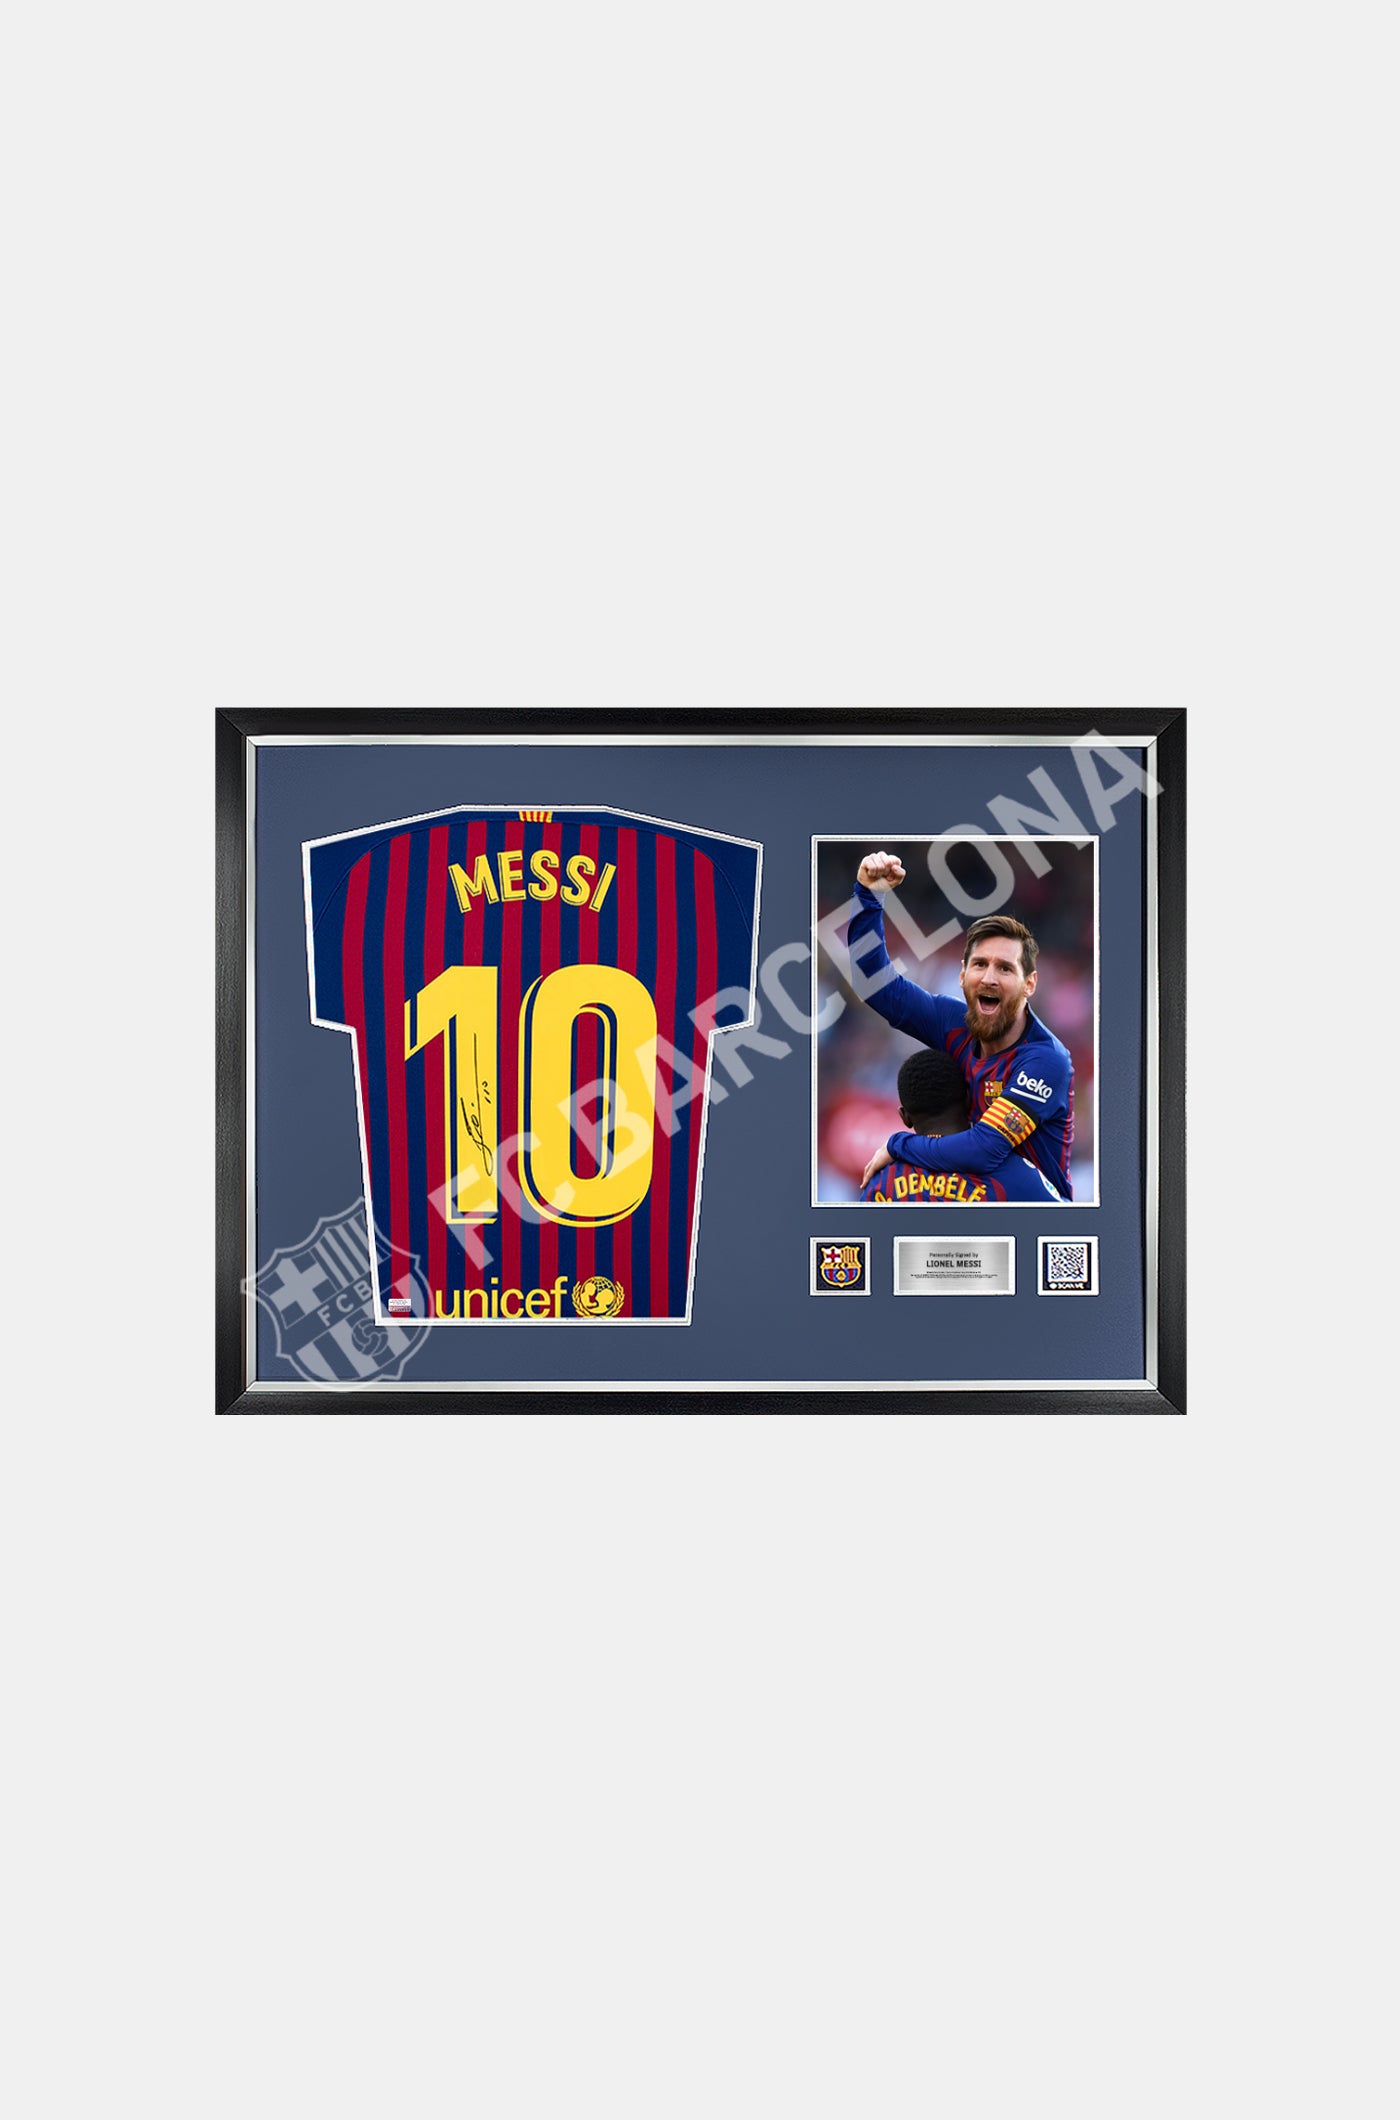 MESSI | Lionel Messi samarreta oficial del FC Barcelona Firmat i emmarcat